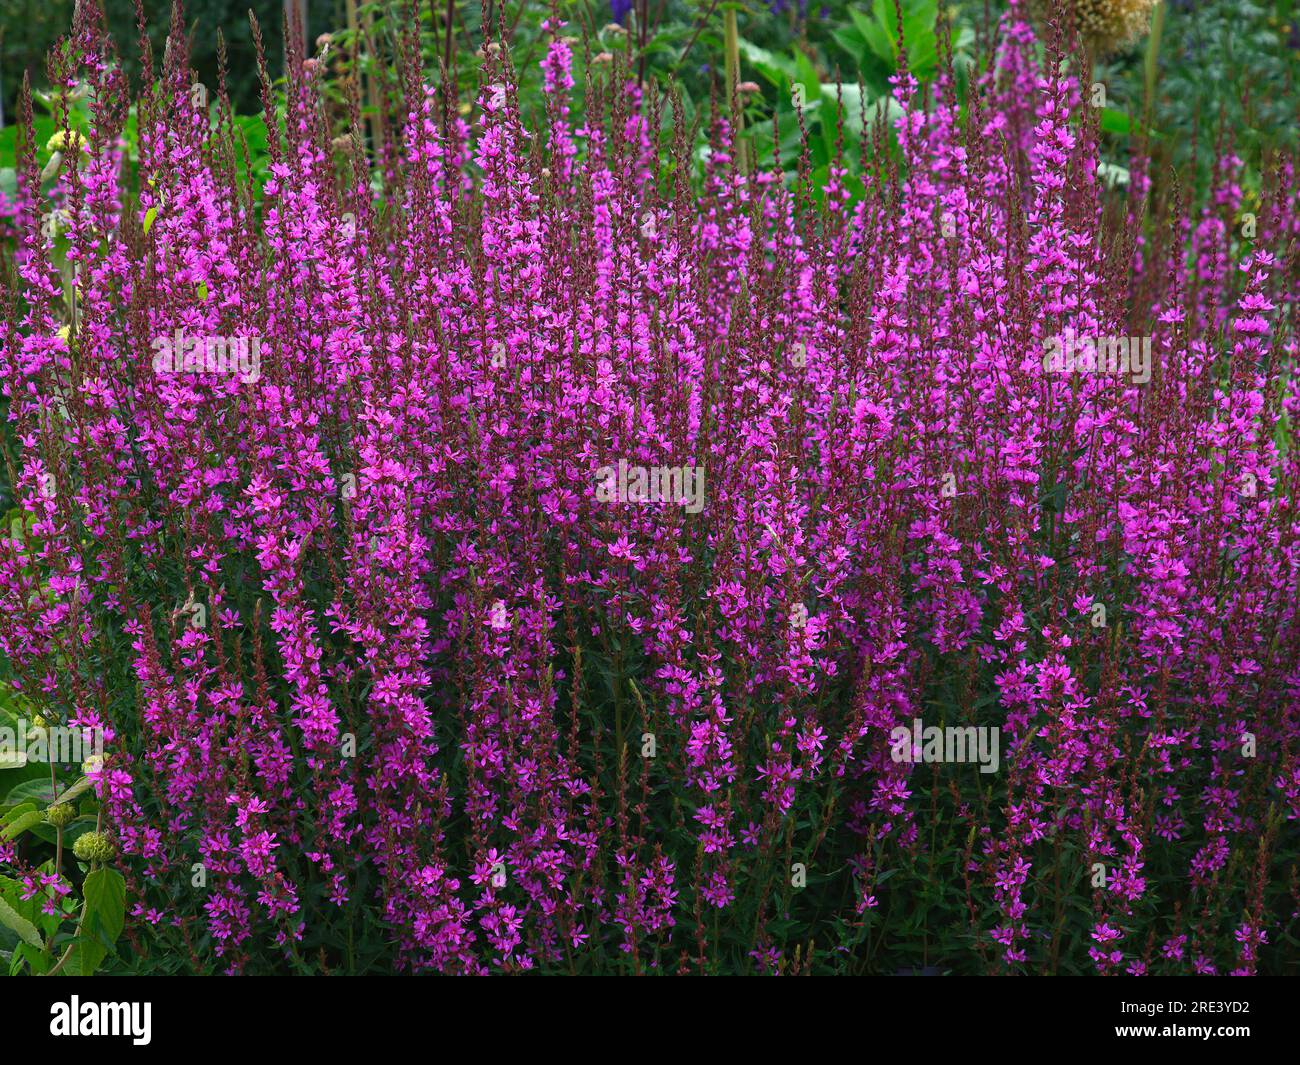 Nahaufnahme der lila blühenden, mehrjährigen Gartenpflanze Lythrum virgatum dropmore purple oder Loosestrife. Stockfoto